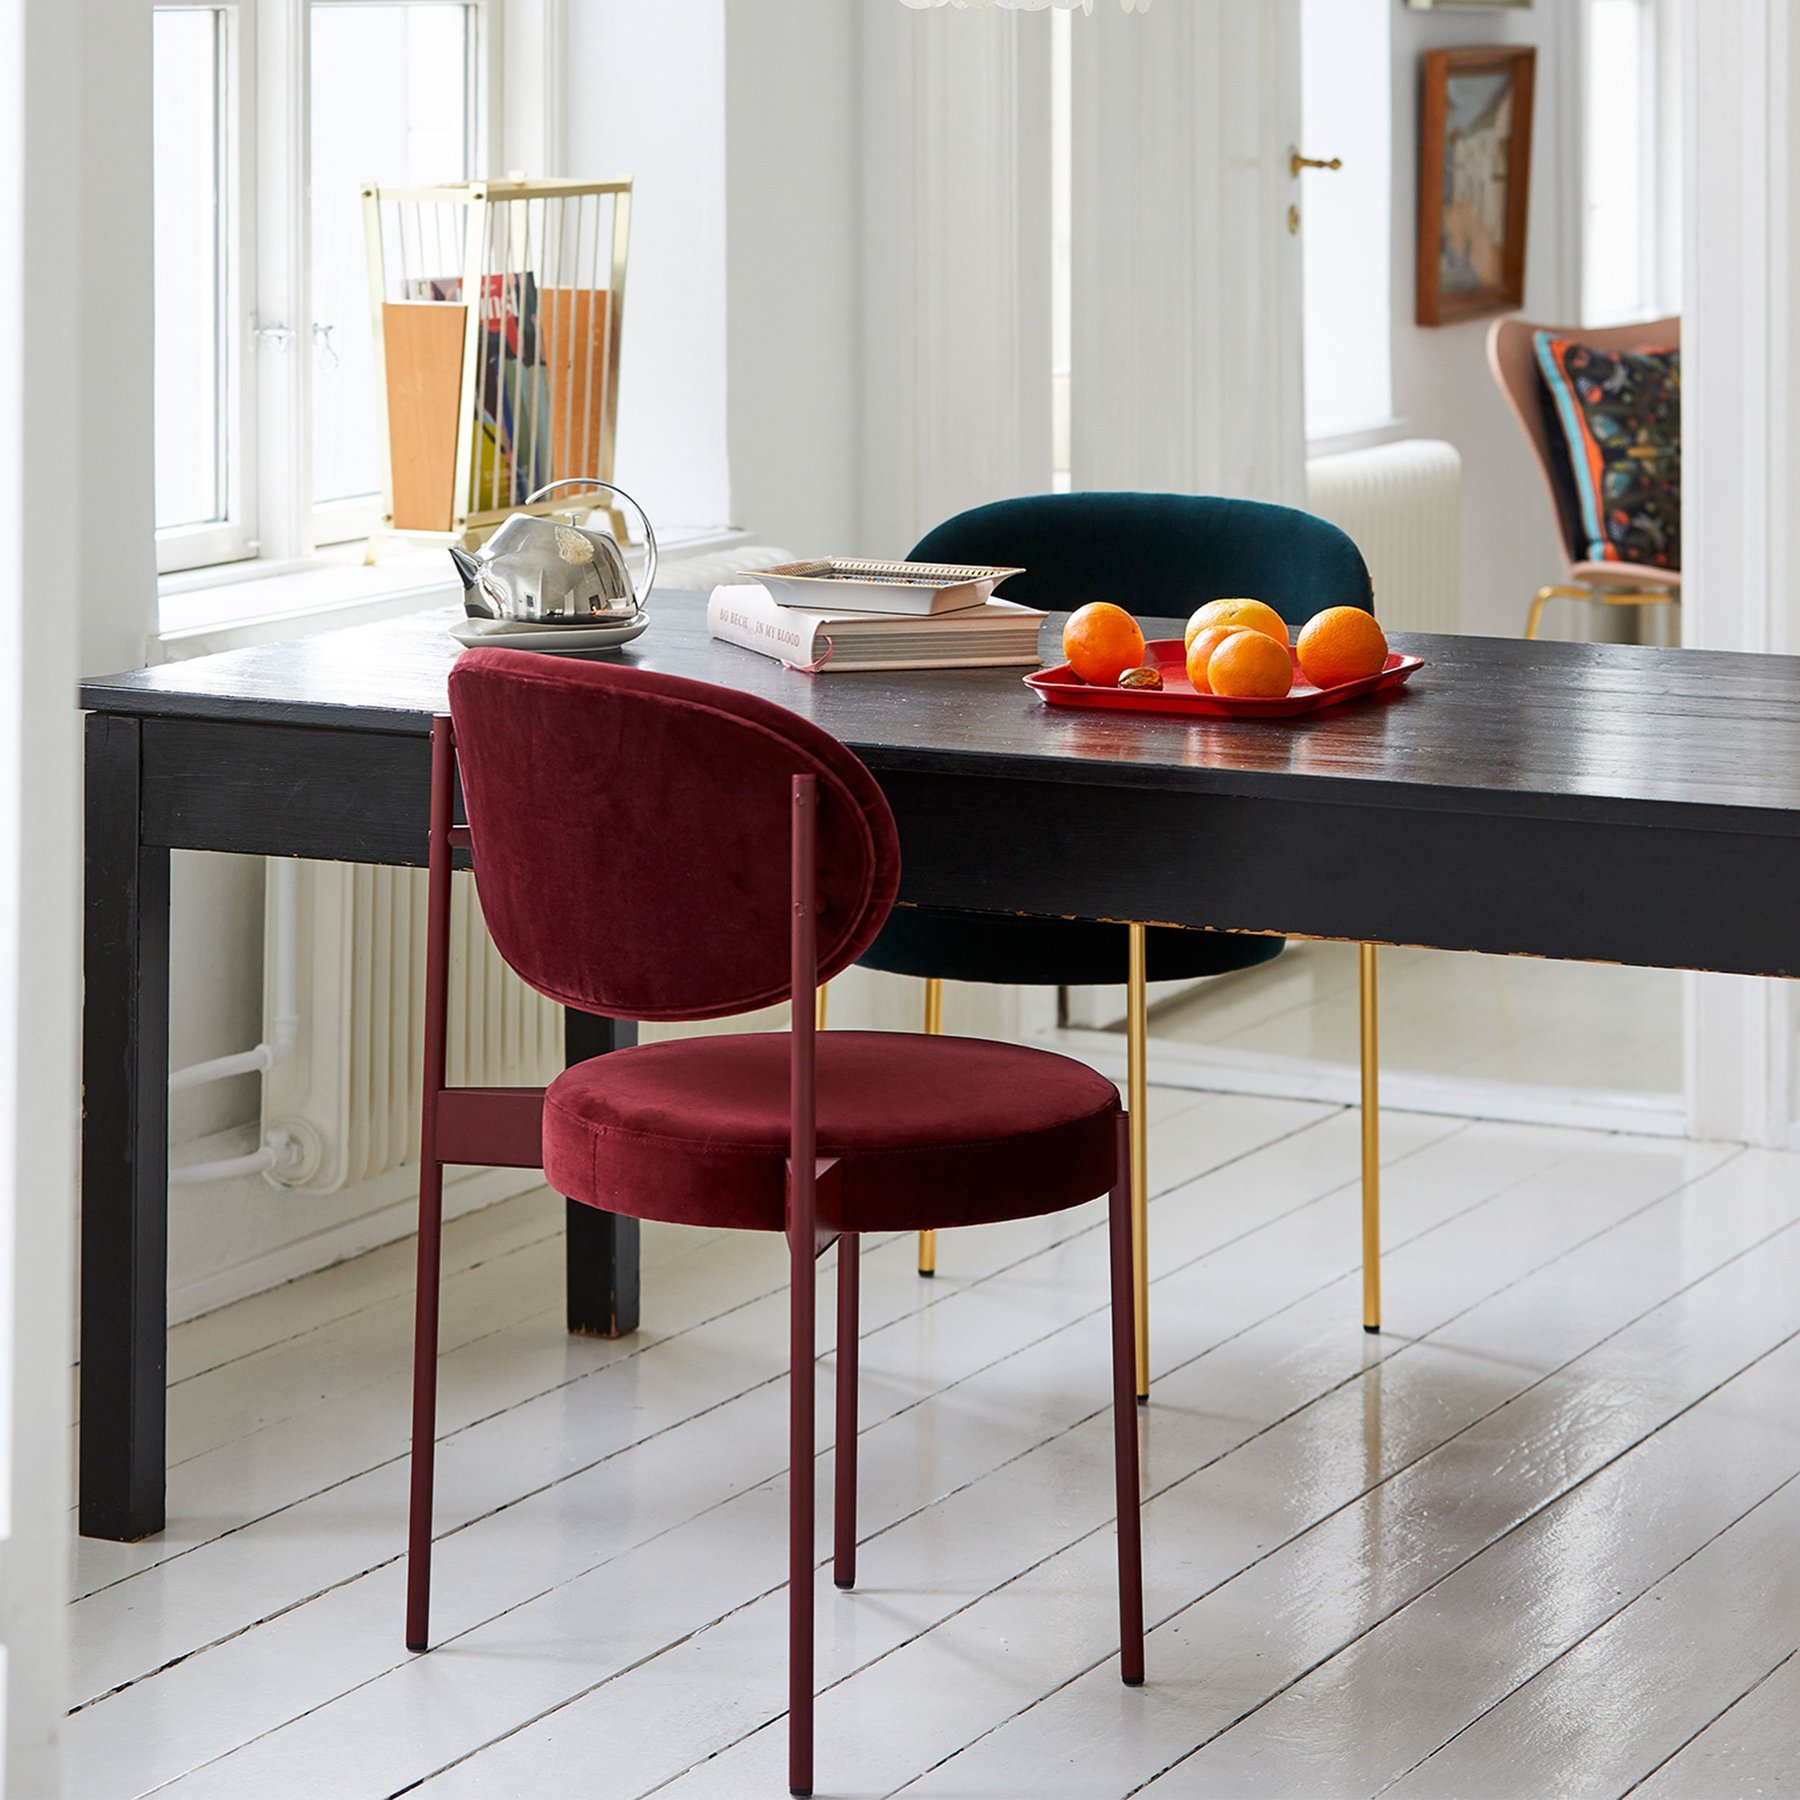 丹麦家具Verpan的SERIES 430 CHAIR BURGUNDY FRAME 餐椅  细节图